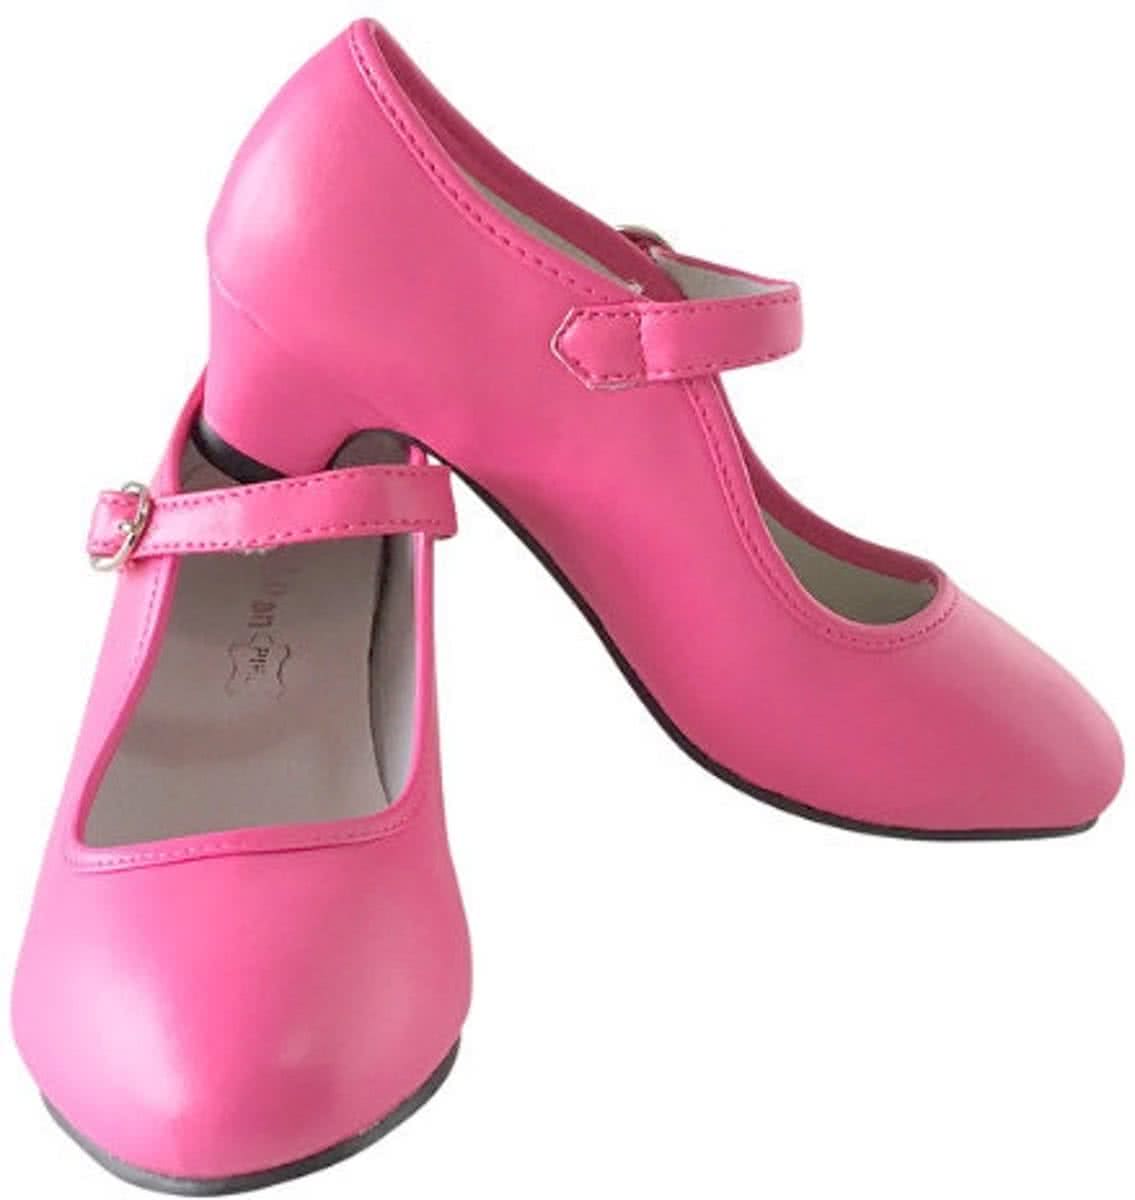 Anna schoenen roze/Spaanse Prinsessen schoenen maat 34 (binnenmaat 22 cm) bij jurk